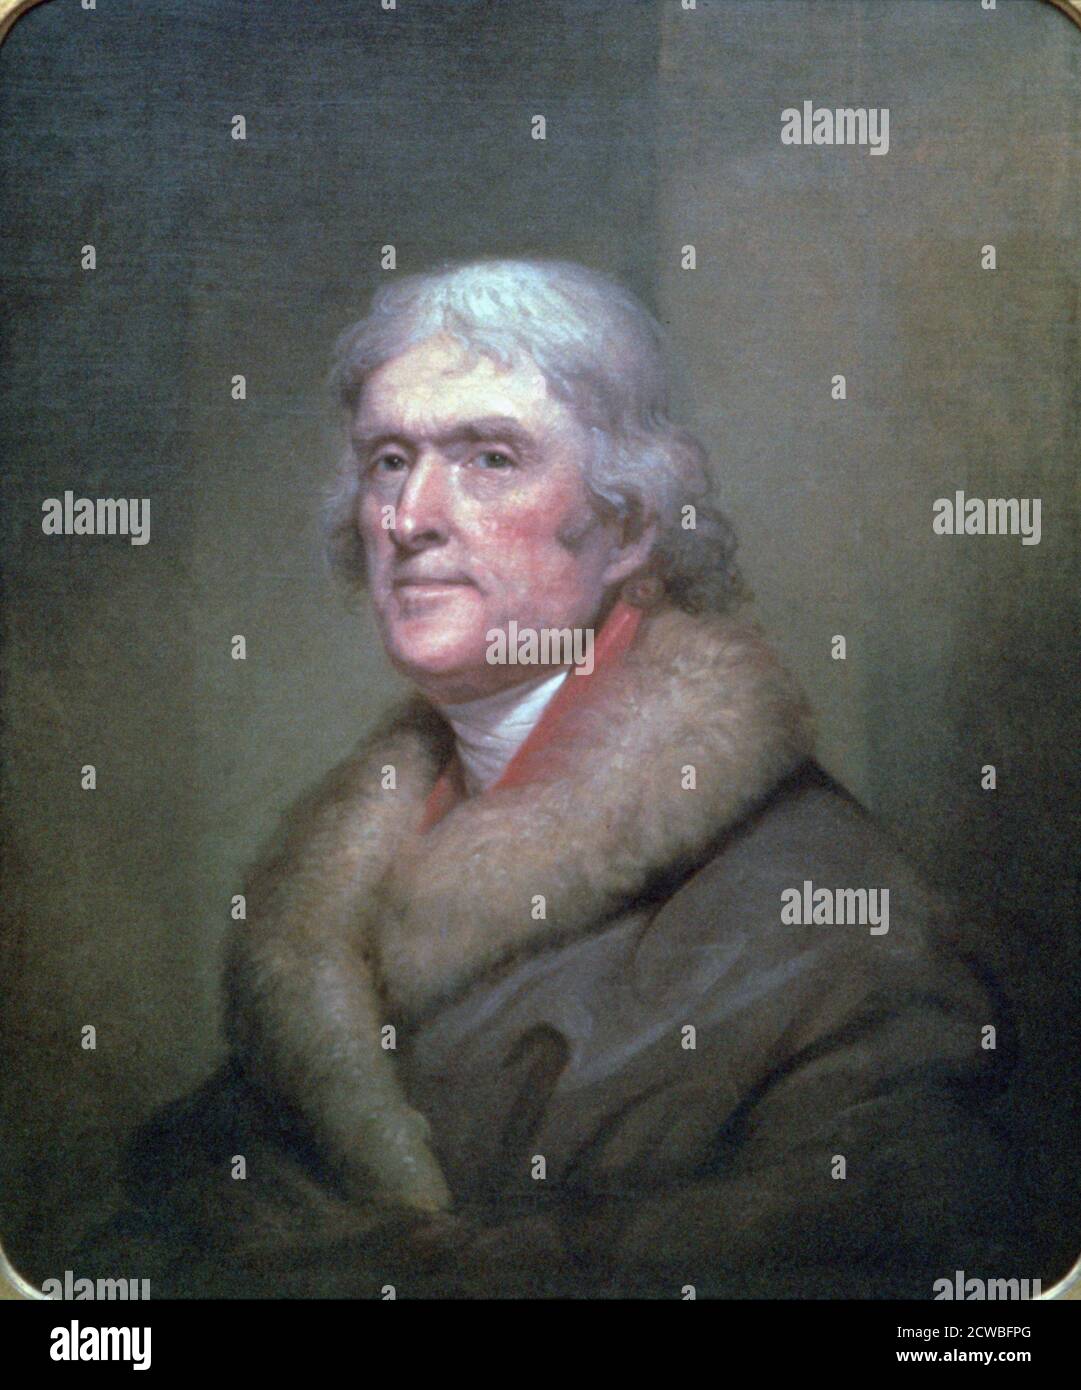 Thomas Jefferson, 1805. Künstler: Rembrandt Peale. Rembrandt Peale (1778-1860) war ein amerikanischer Porträtmaler und Museumswärter. Stockfoto